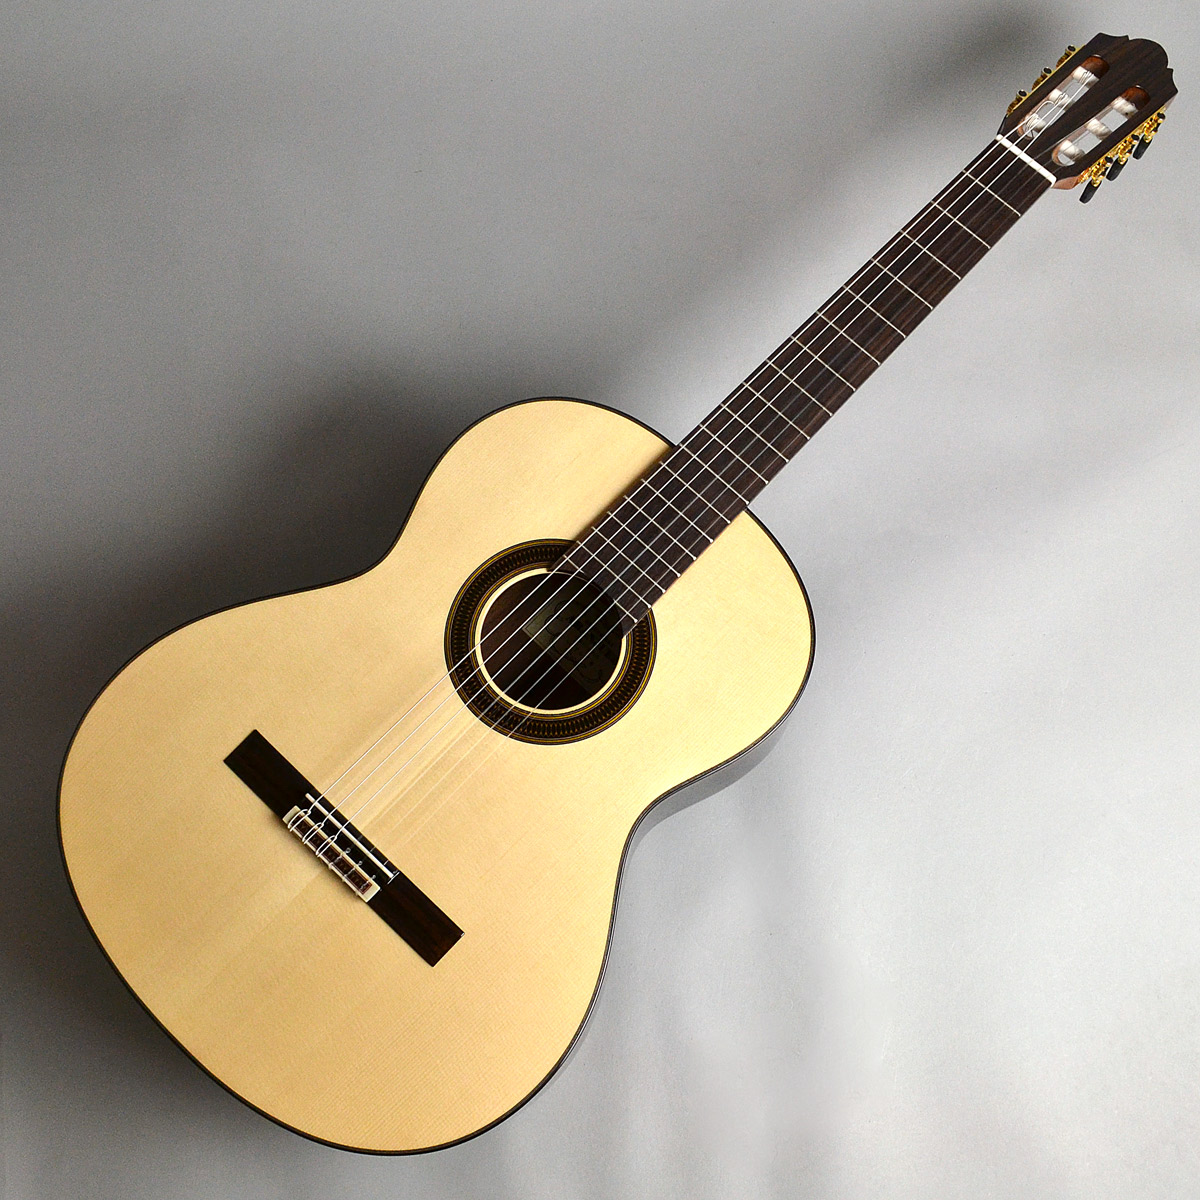 【クラシックギター】ARANJUEZ 707S/710S 島村楽器オリジナルモデル